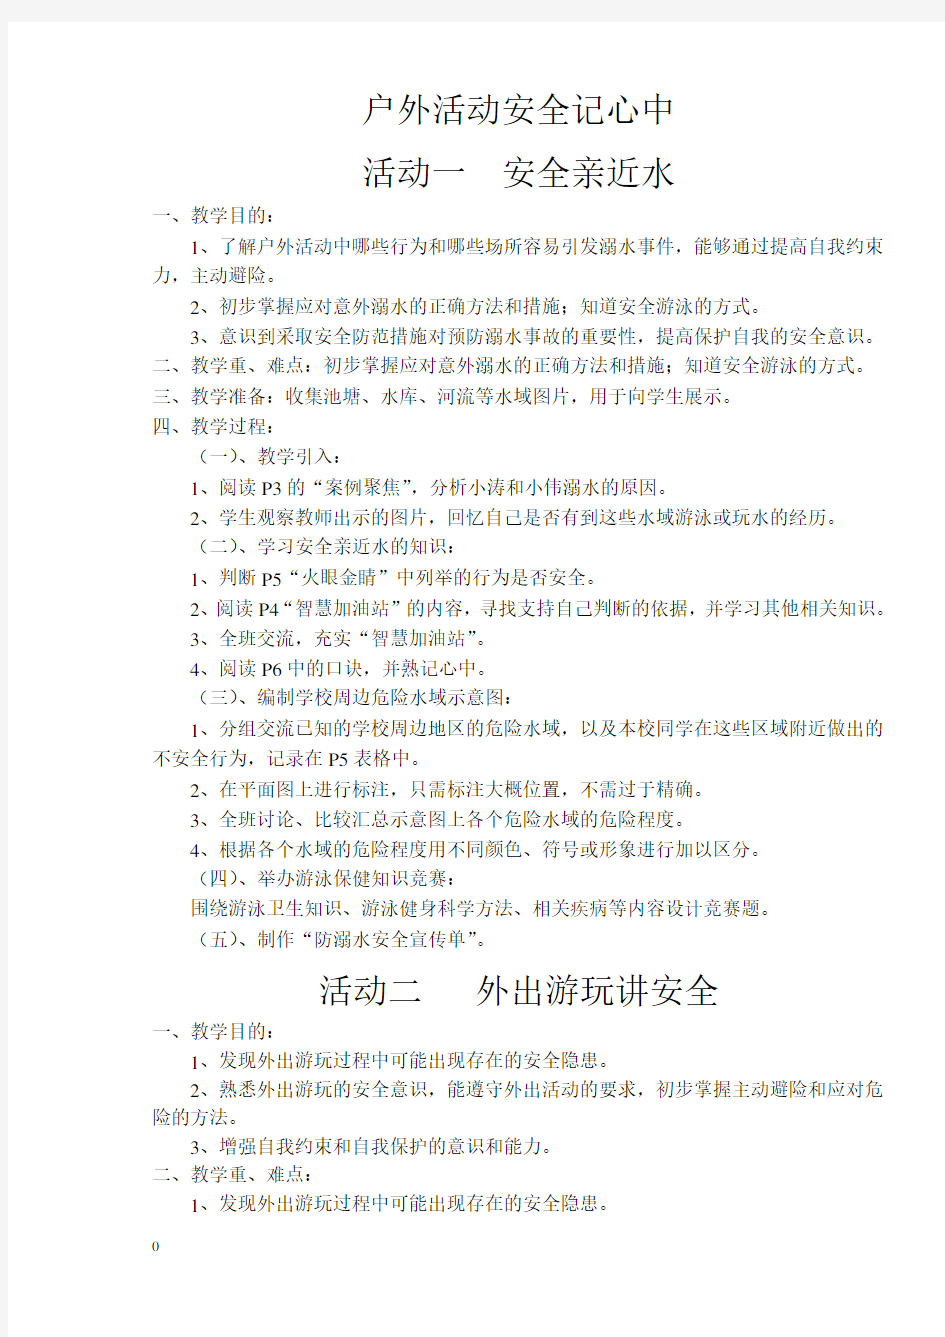 四年级下册综合实践活动教案(上海科技教育出版社)